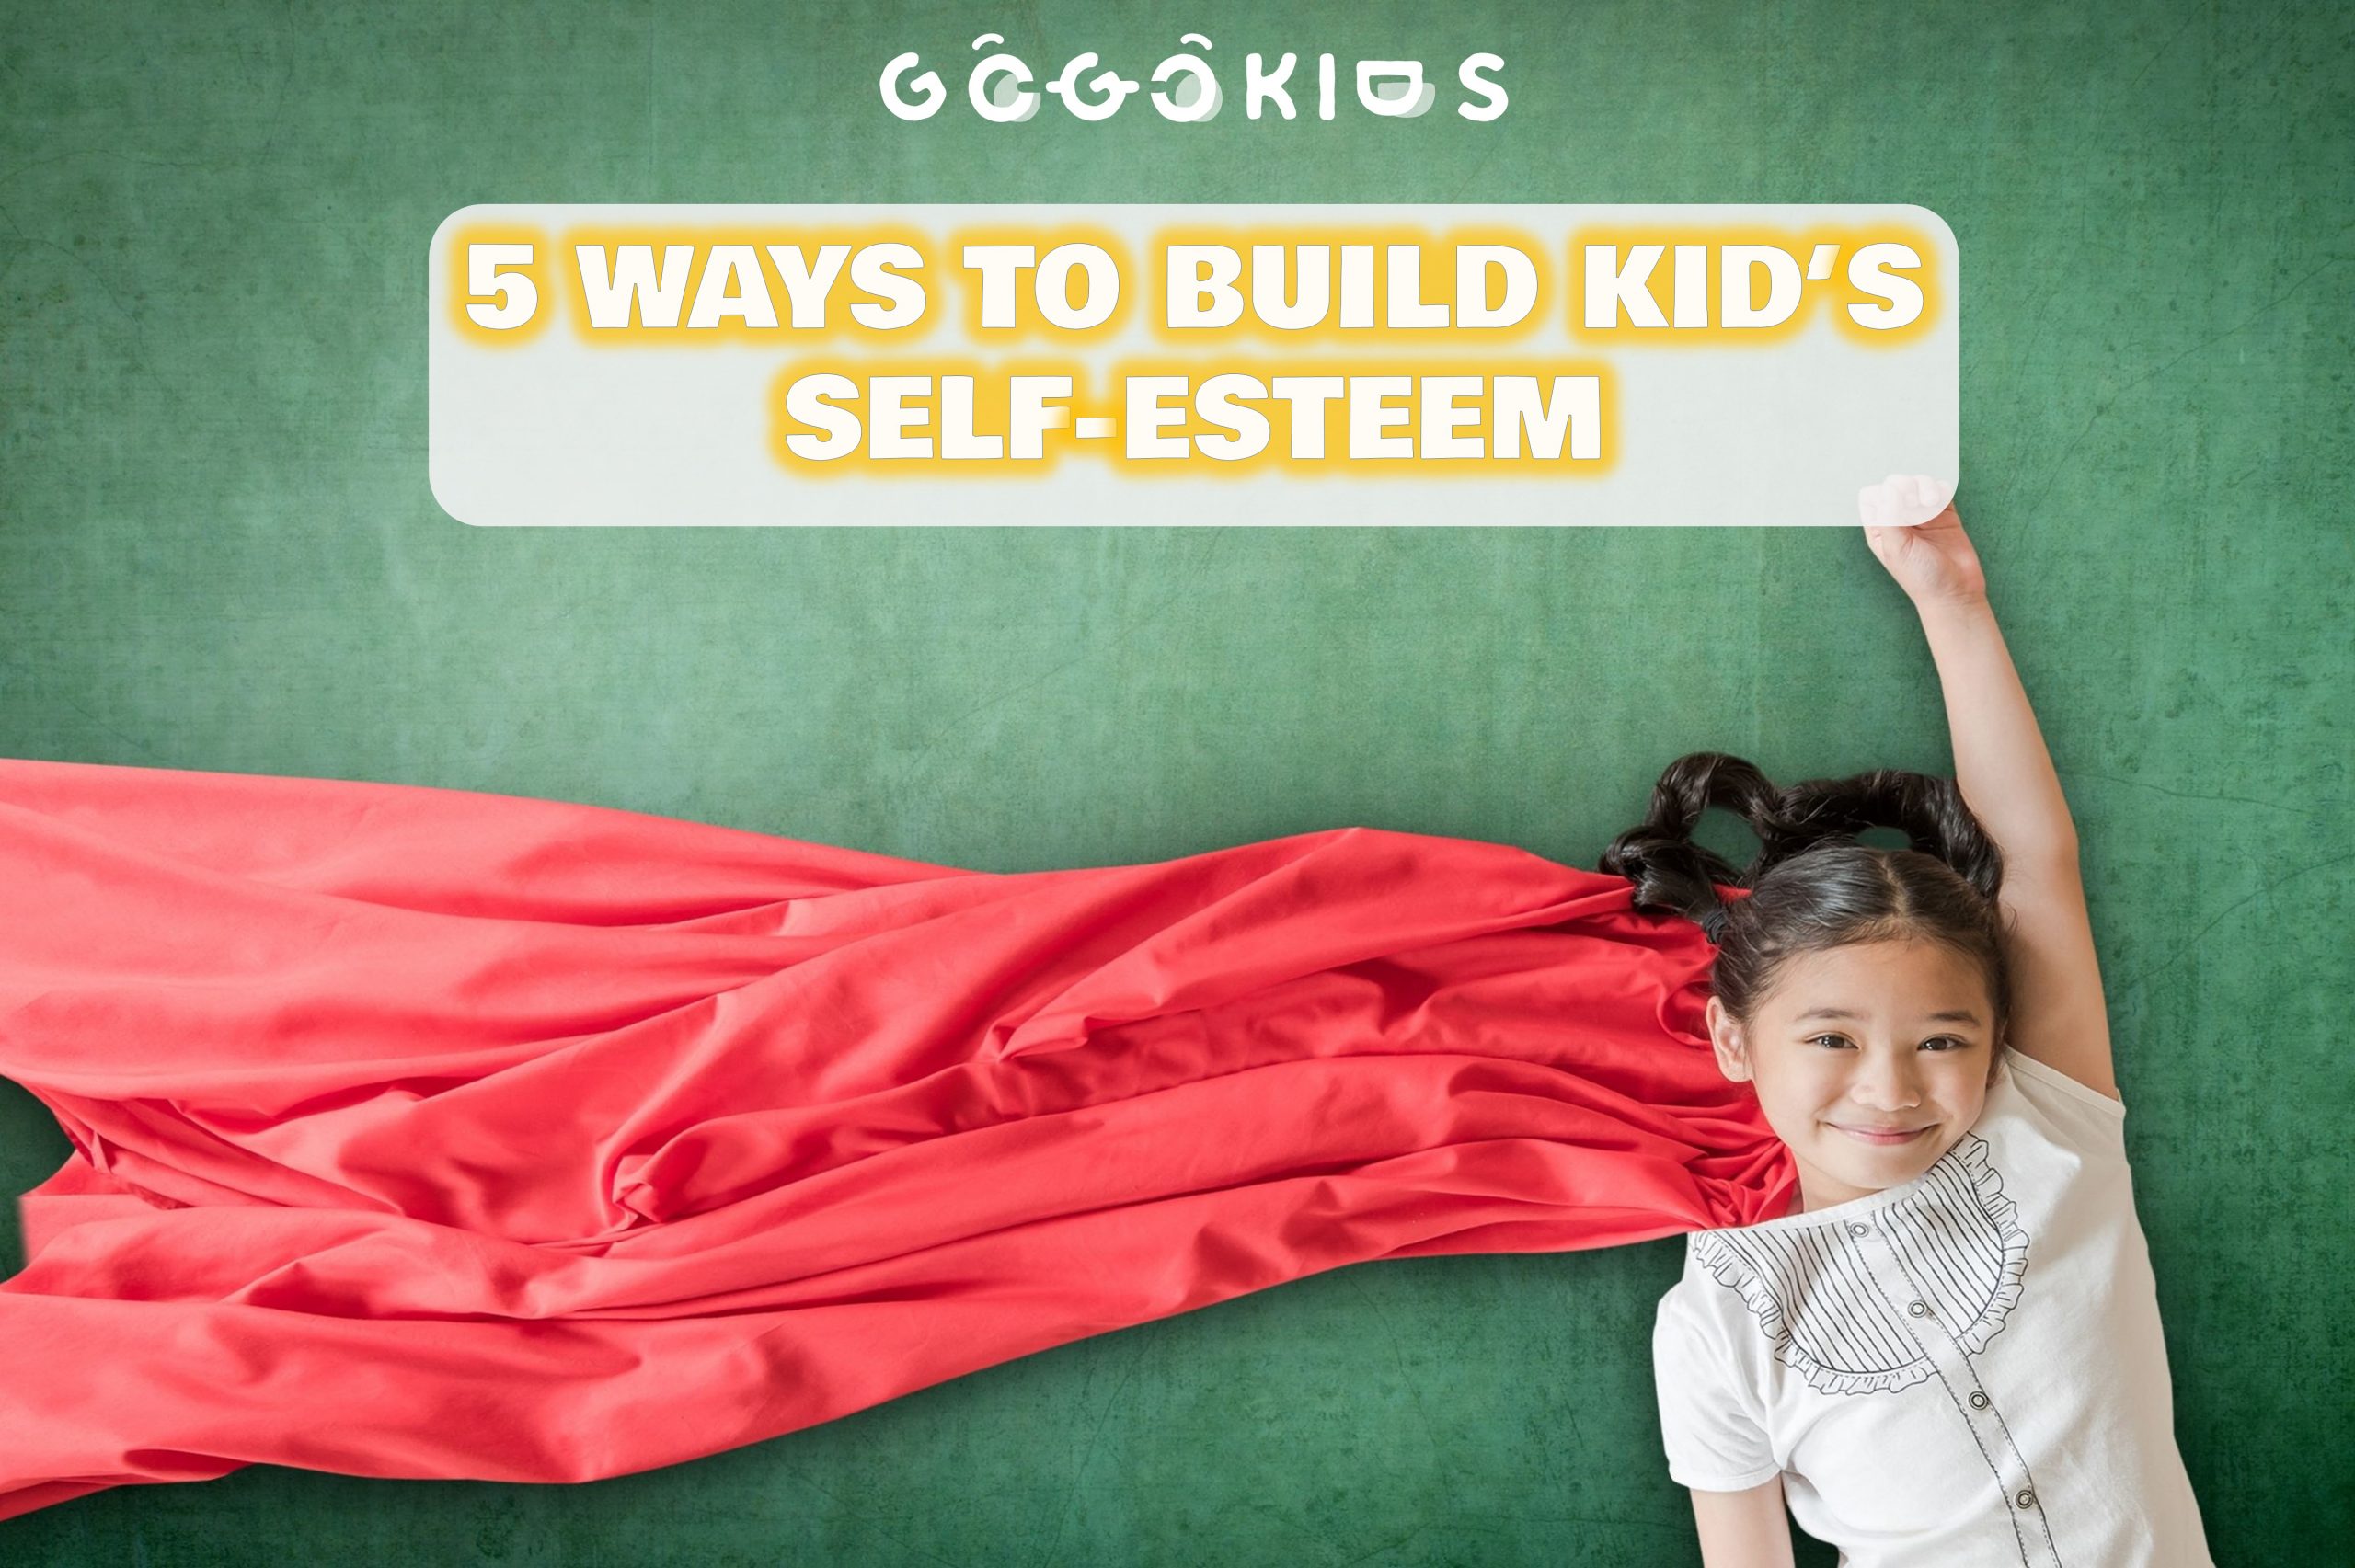 5 Ways to Build Kid’s Self-Esteem.